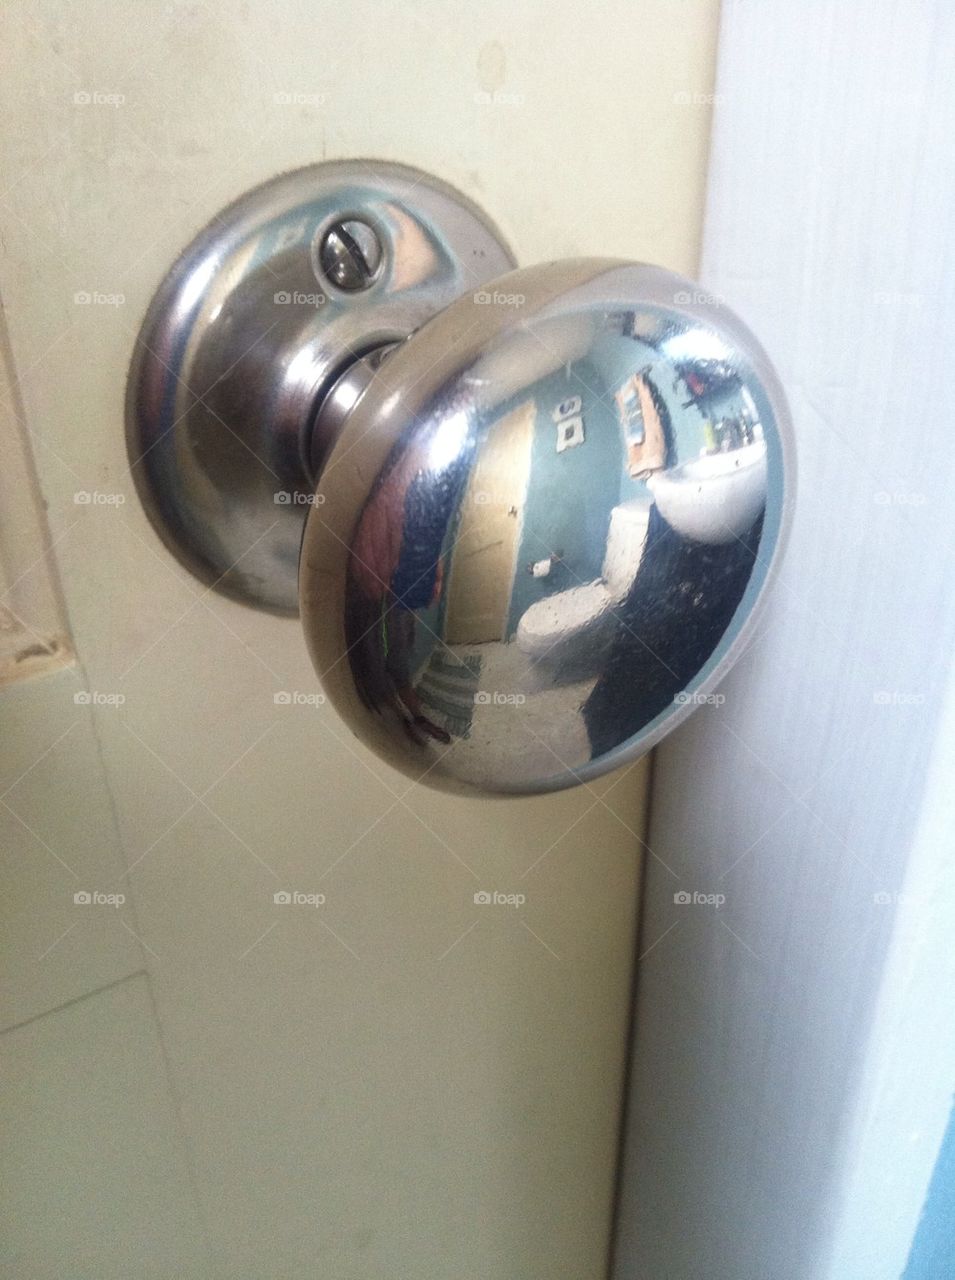 Reflective door knob